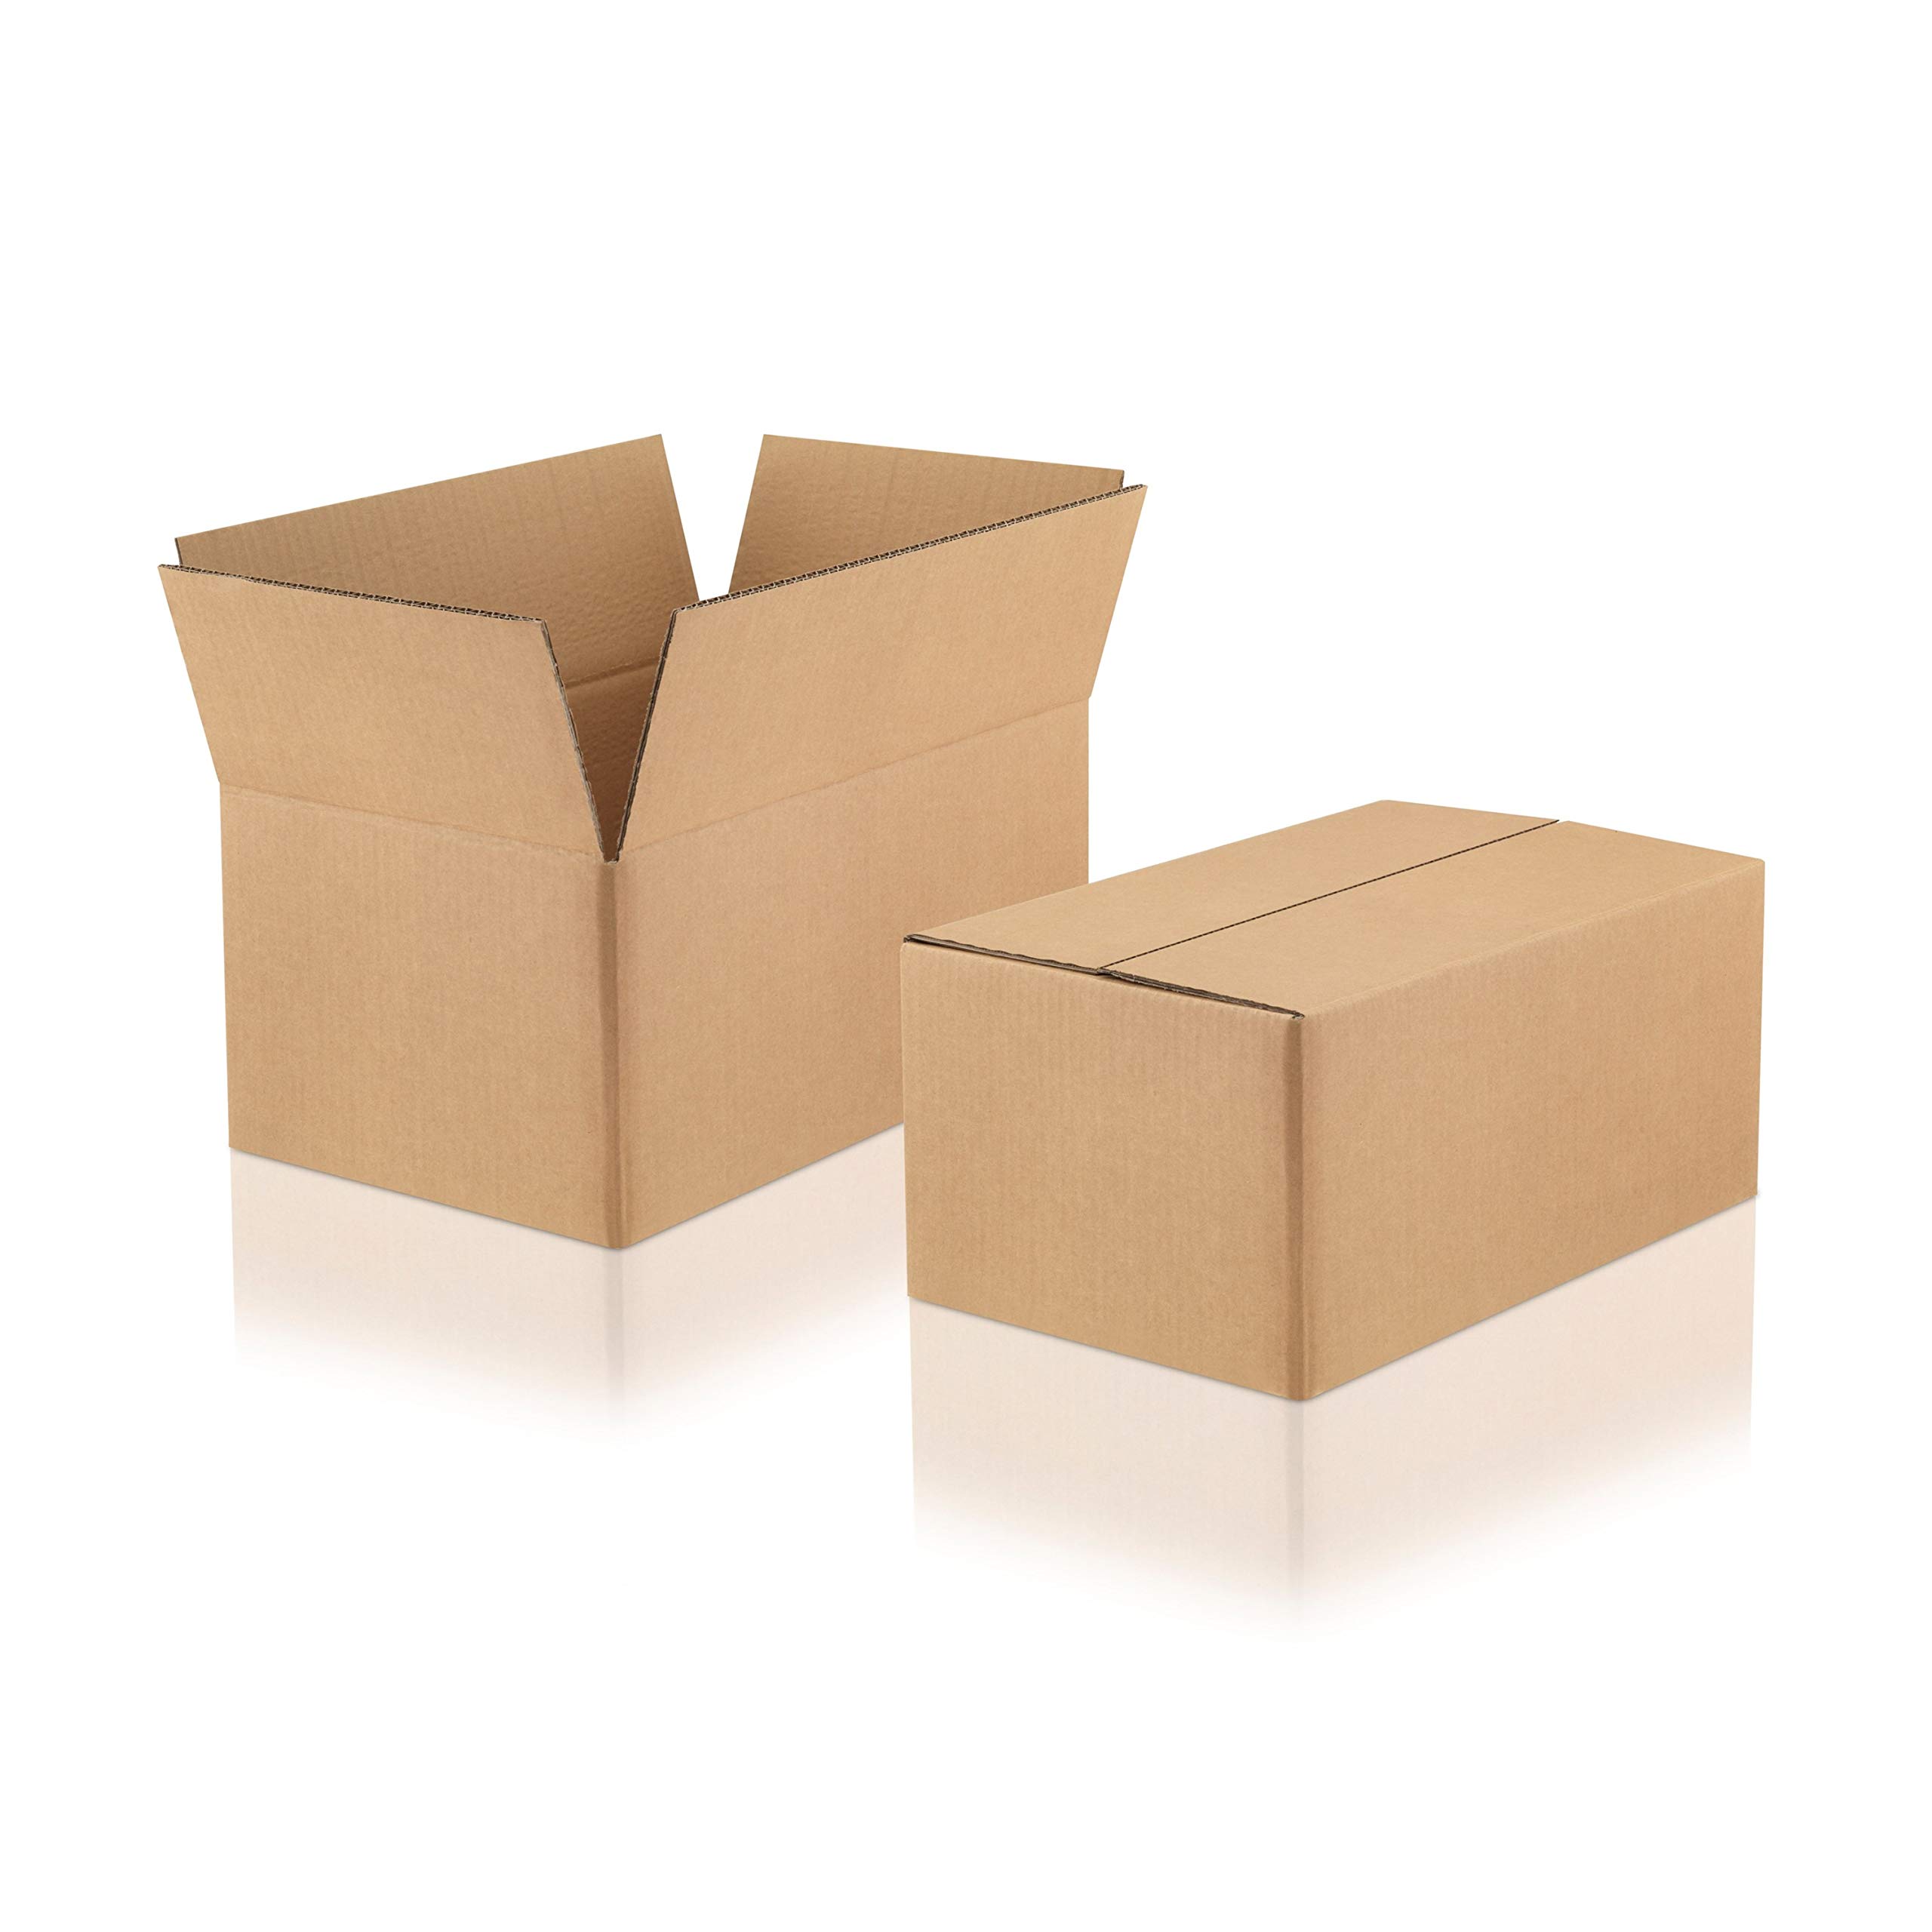 WPTrading - 10 Stück Versandkarton 2-wellig 350 x 350 x 300 mm Wellpappe (Nr. 2W-40) Braun - Pappe Faltkarton für Warenversendung, Paket & Päckchen groß (L) - Karton Versandverpackung extra stabil